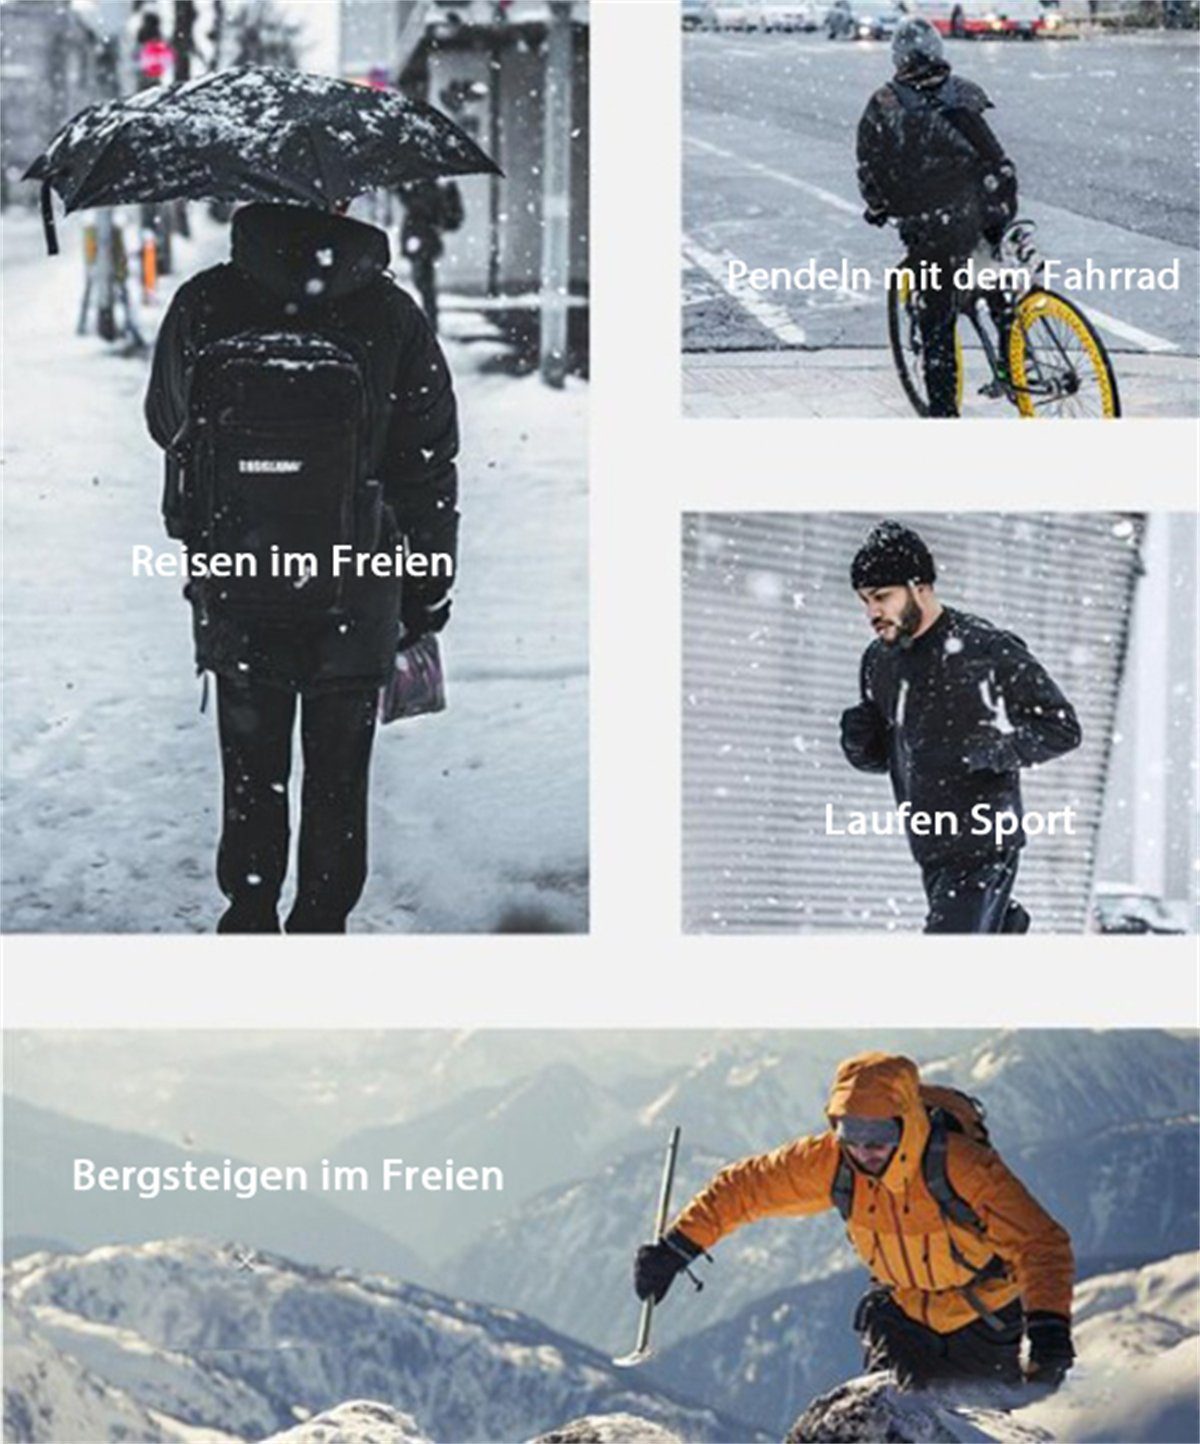 Discaver Fahrradhandschuhe Warme Sport-Touchscreen-Handschuhe für Wasserdicht, das und kältebeständig, Blau Radfahren Freien im rutschfest samtig